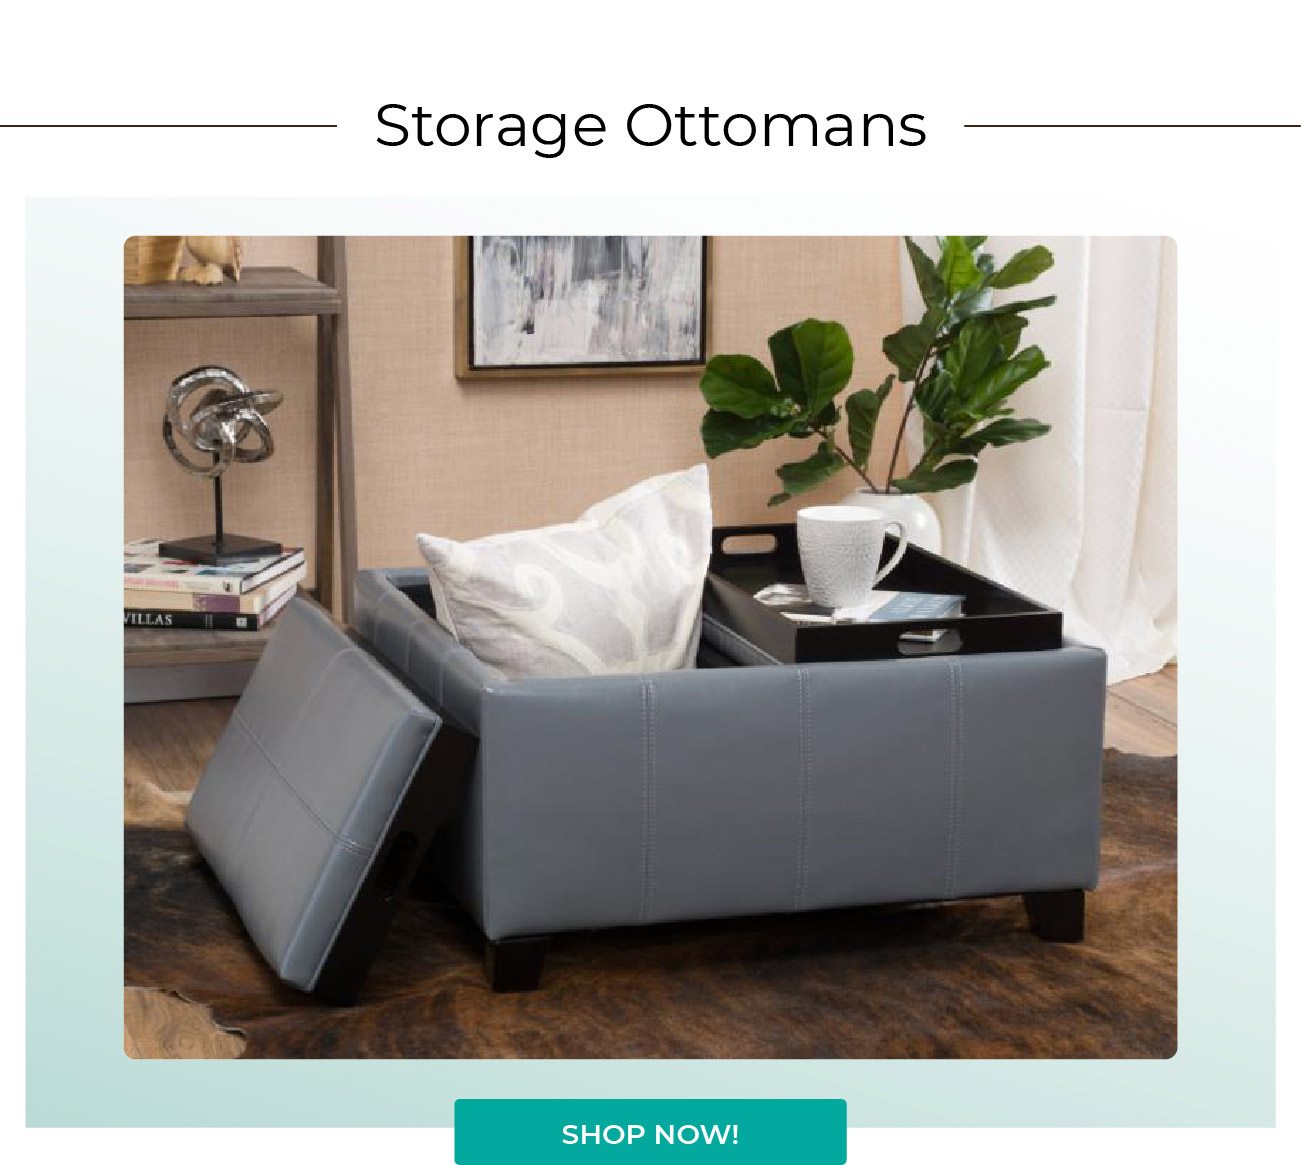 Storage Ottomans